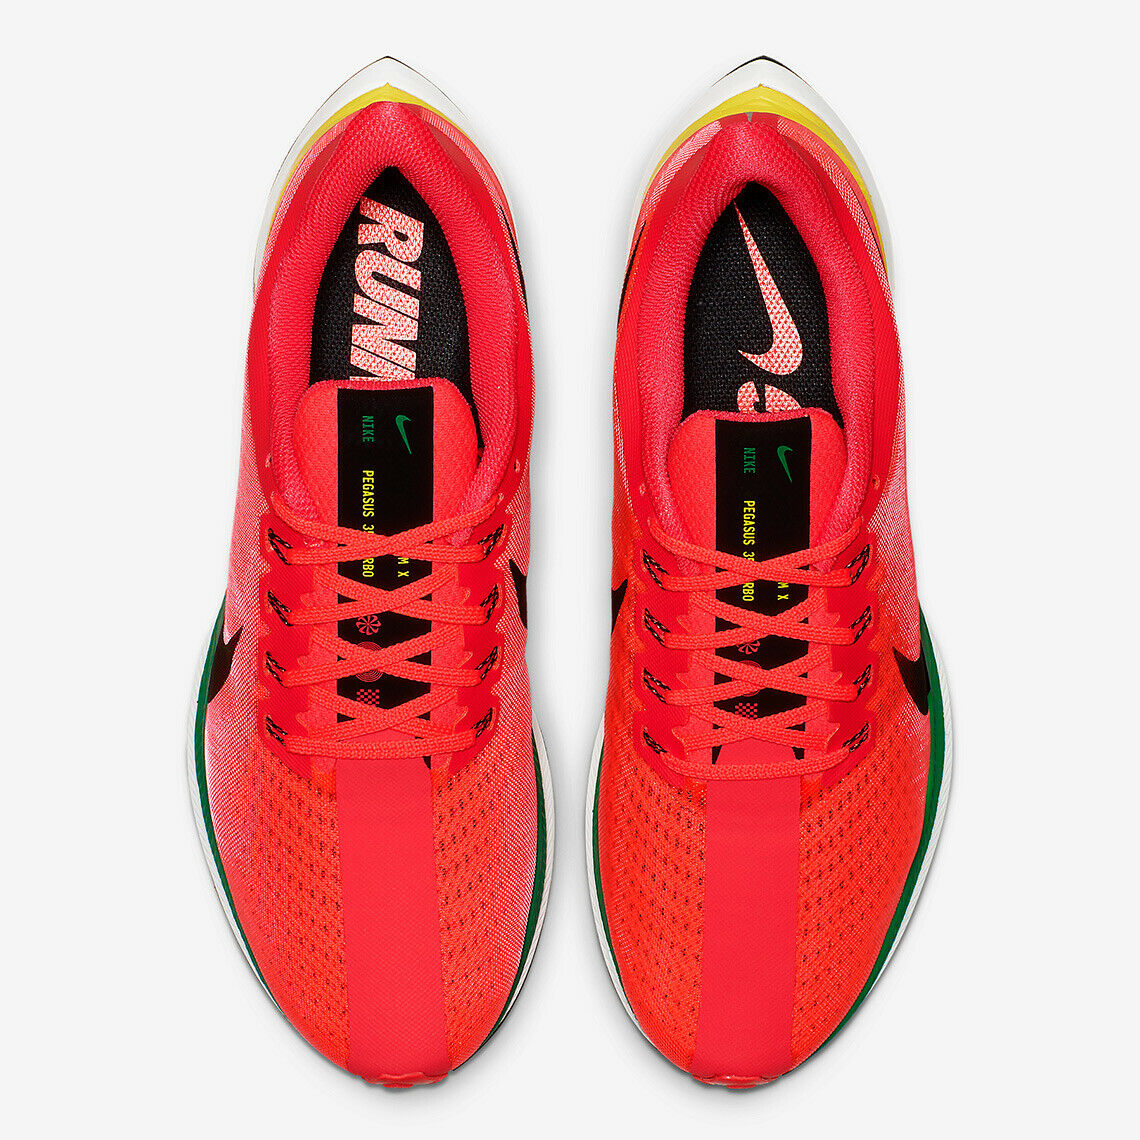 Nike Zoom Pegasus 35 Turbo Red Orbit Men's Running Training Shoes Size 12 - image 5 of 5